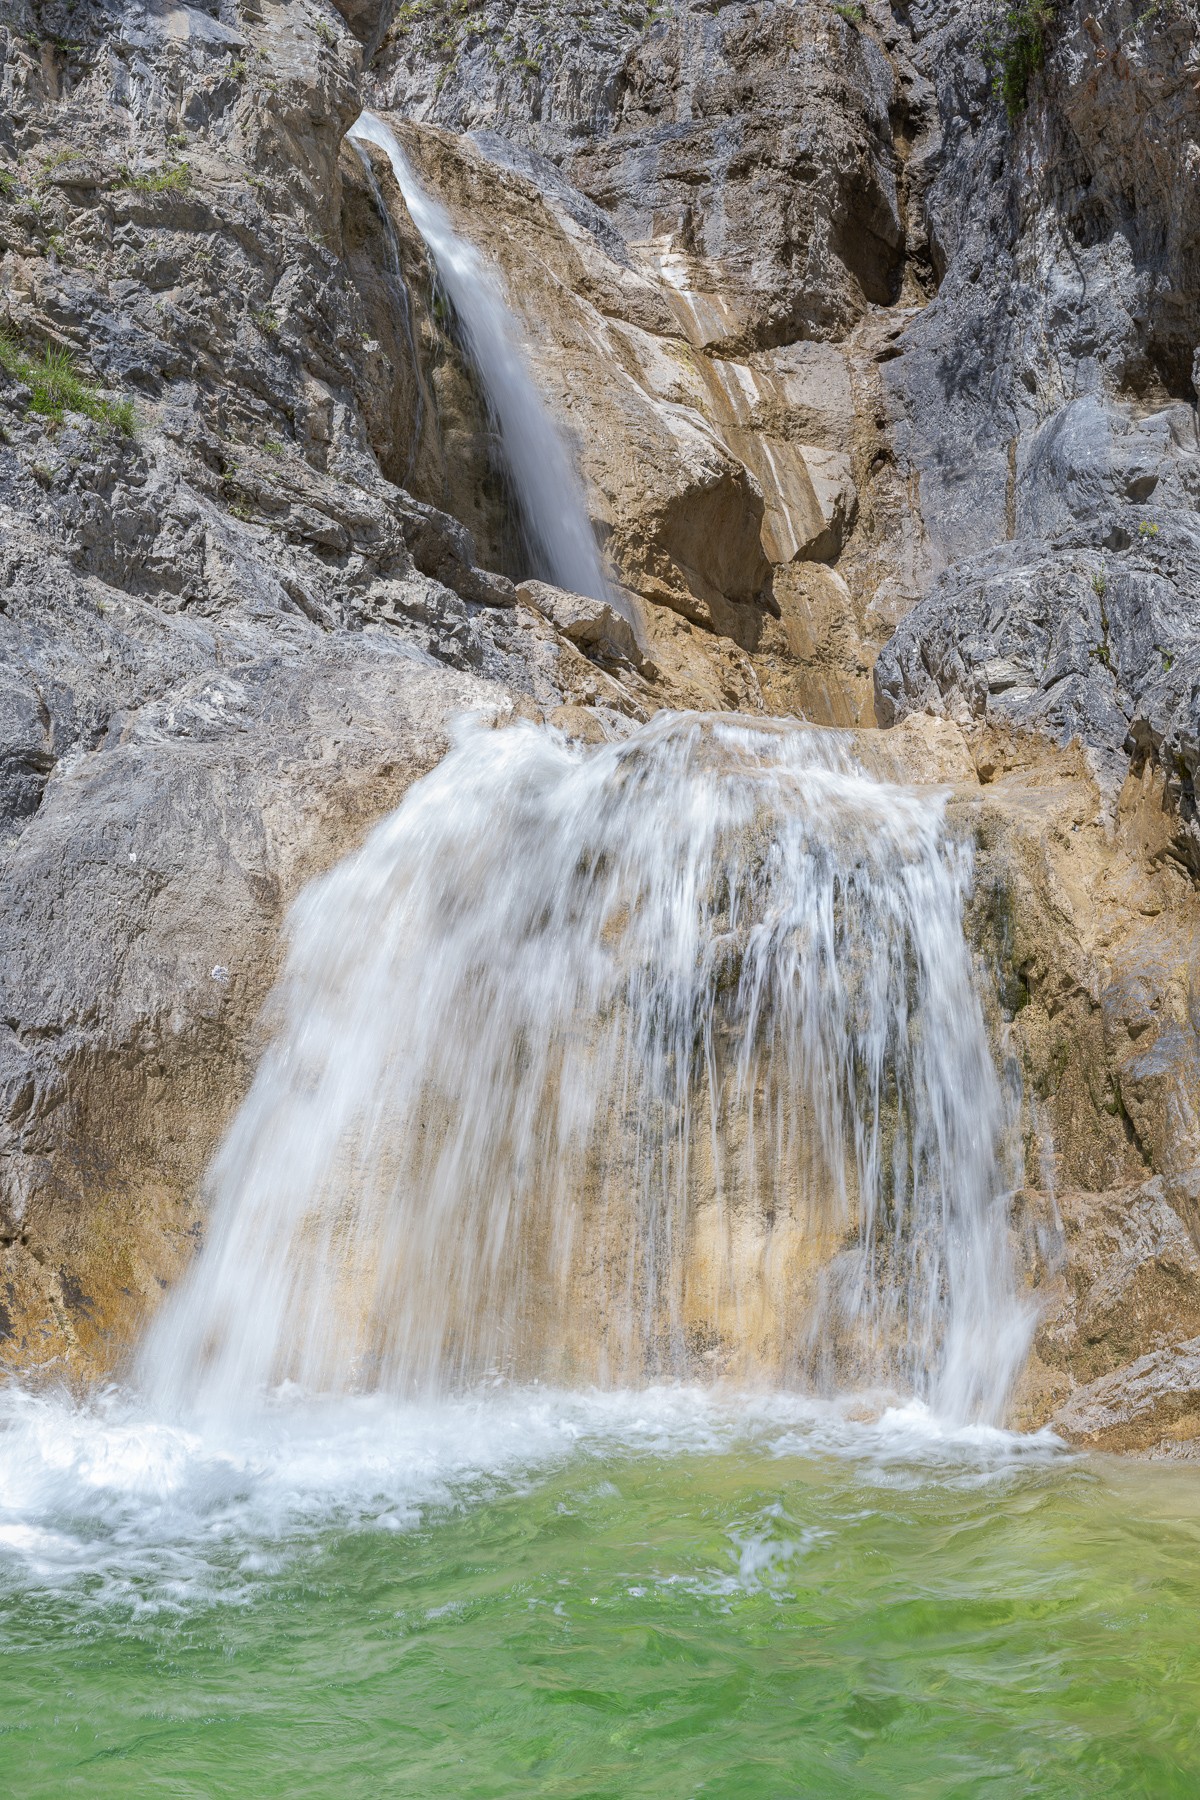 Heller Wasserfall - Kalkfelsen hochkant. Heißer Sommertag - die Gumpe unter dem Wasserfall lädt zum Baden ein.